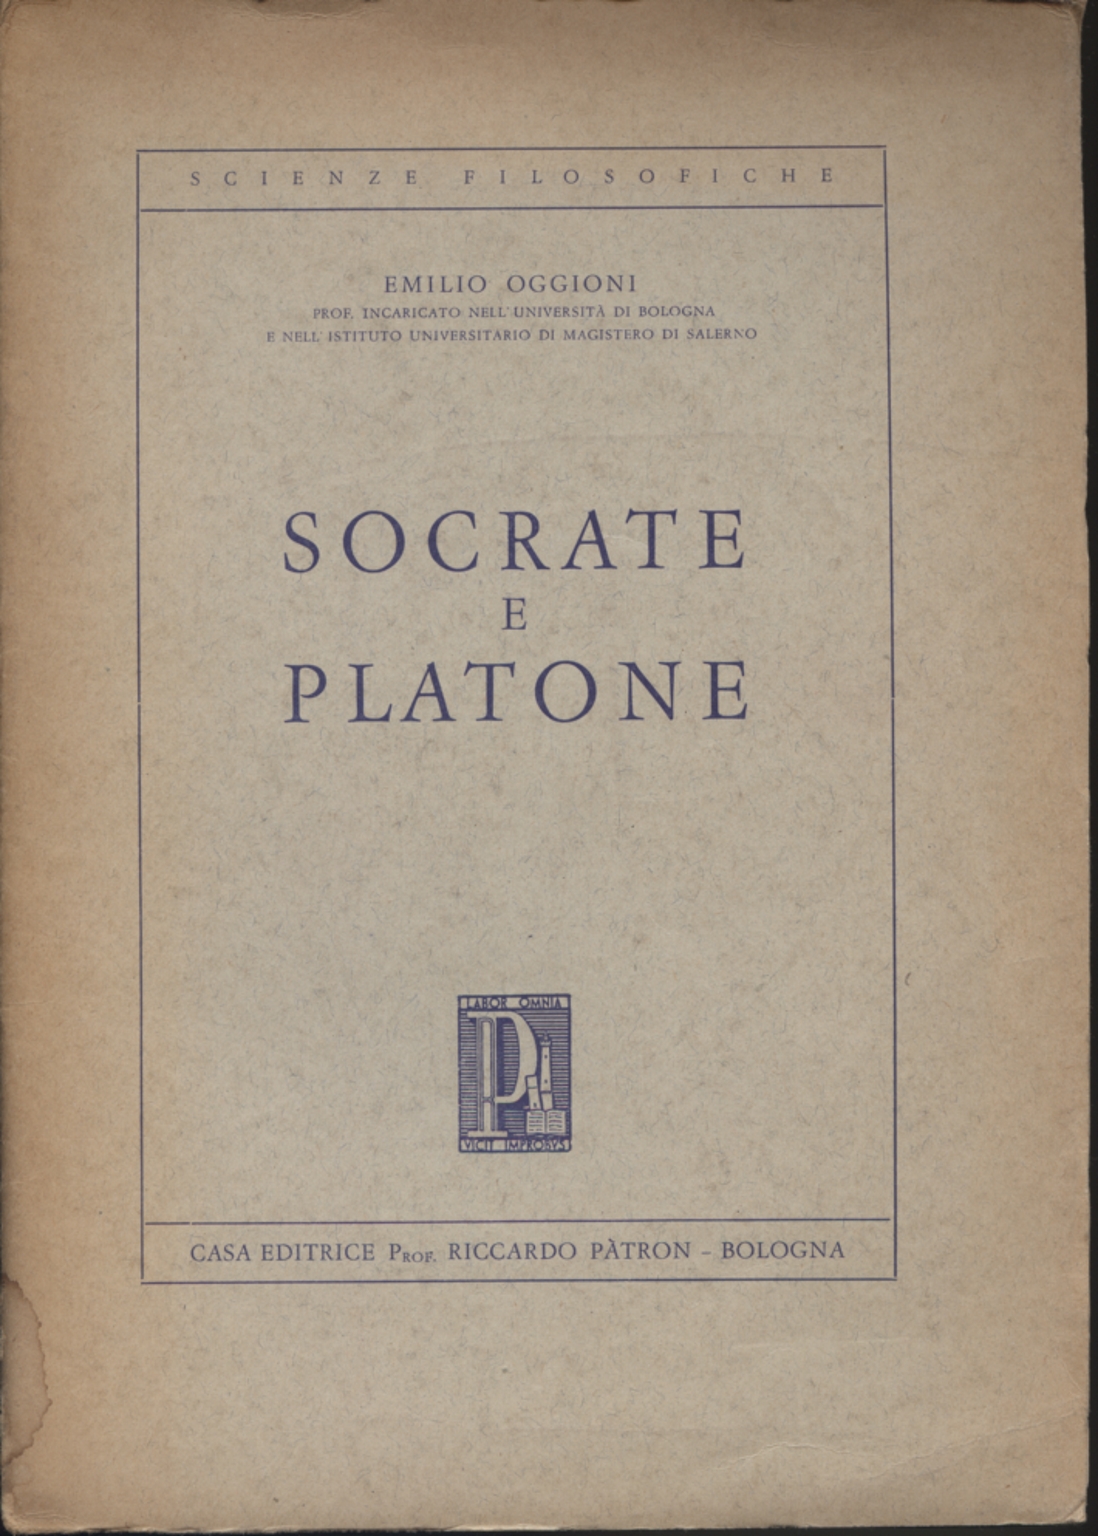 Socrate e Platone, Emilio Oggioni